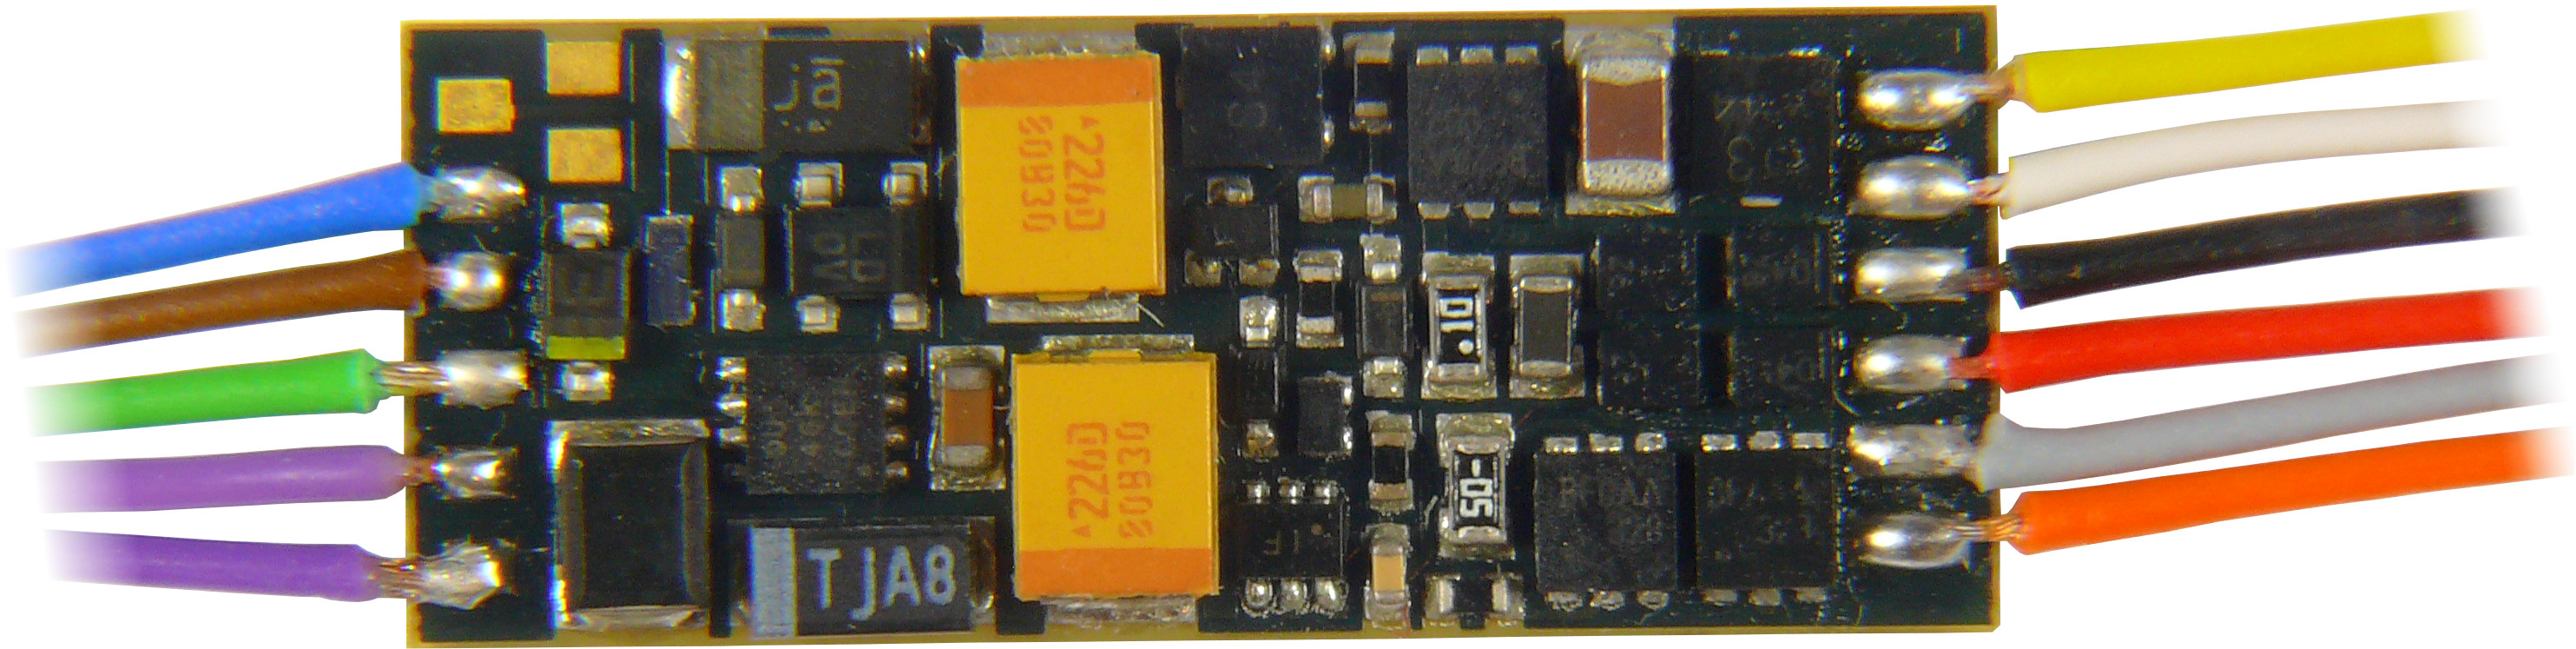 descodificador DCC/mm cable-nuevo Zimo electrónica mx617 min 